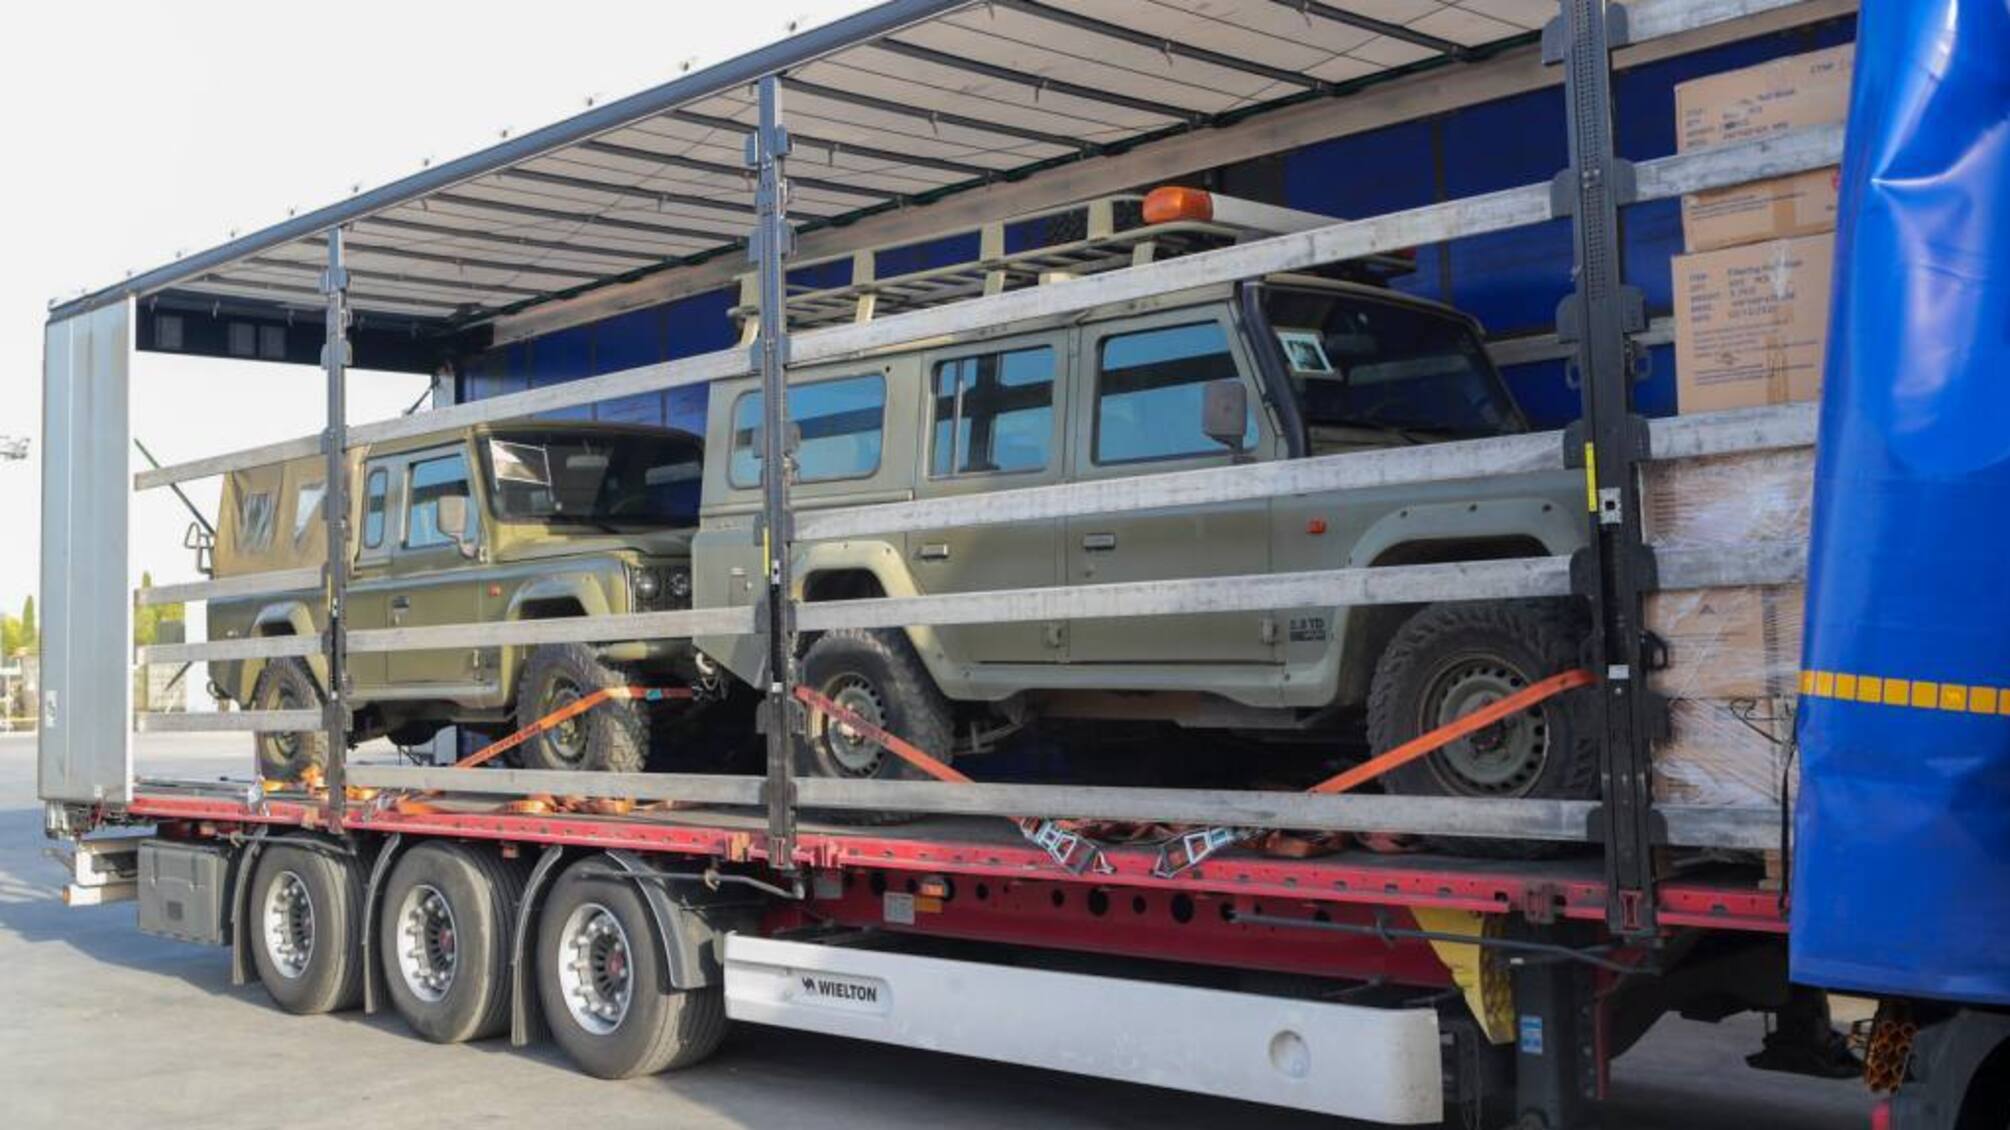 Іспанія надала Україні масштабну військову допомогу: системи ППО, бронетехніку та 300 тонн військових вантажів